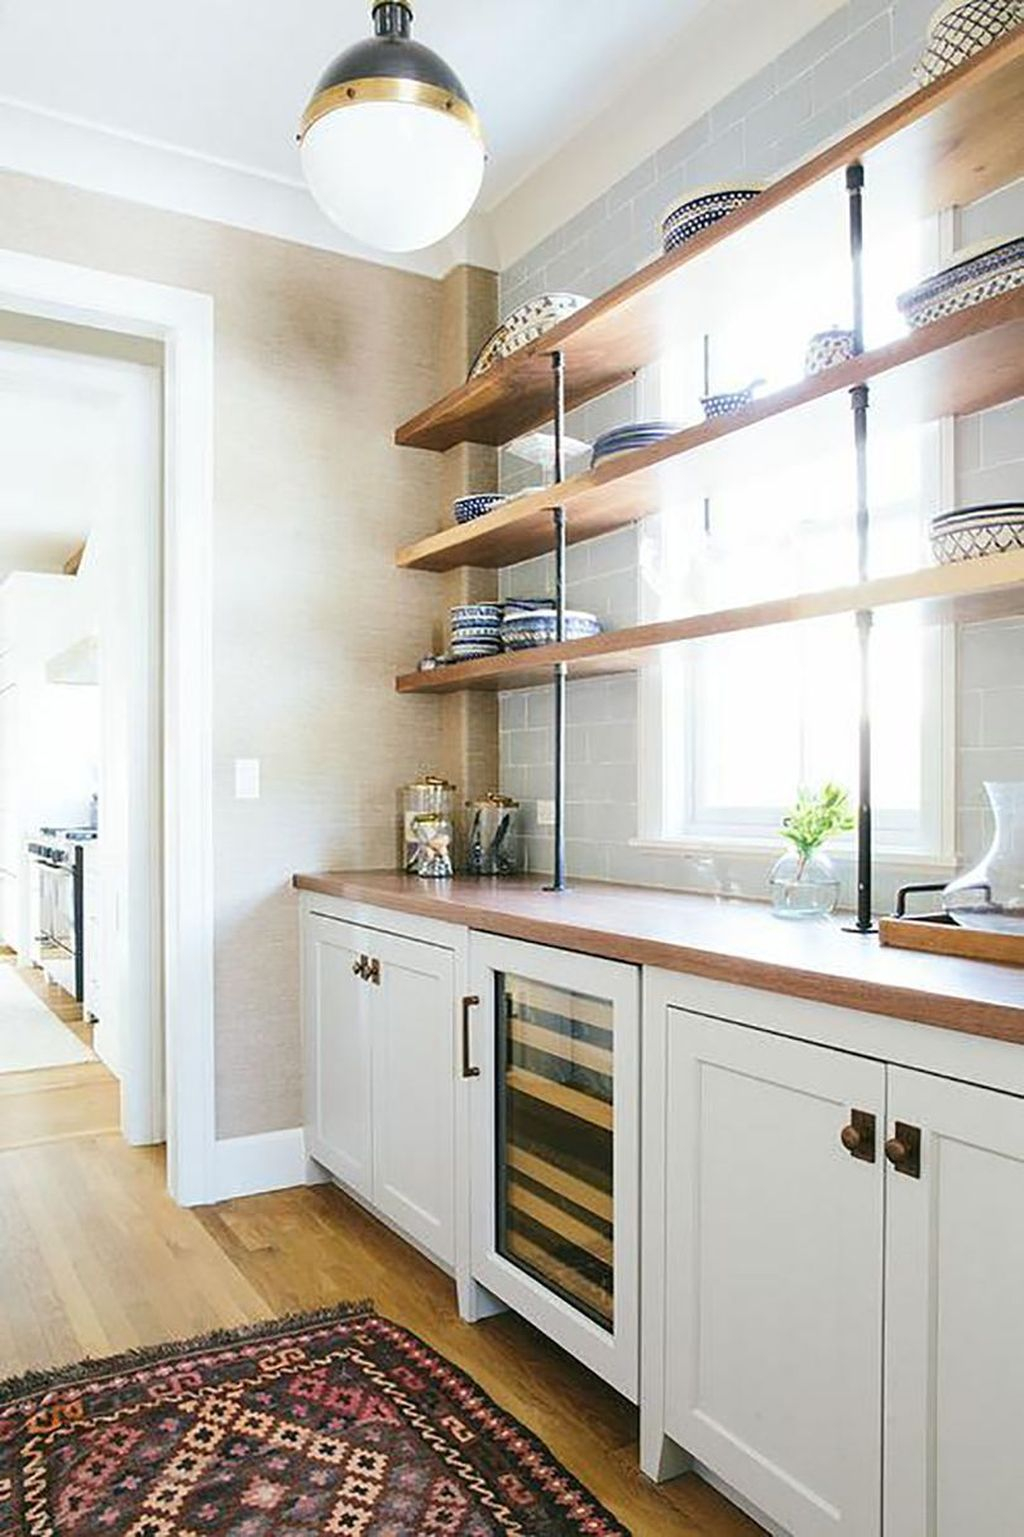 Wonderful Industrial Kitchen Shelf Design Ideas To Organize Your Kitchen22